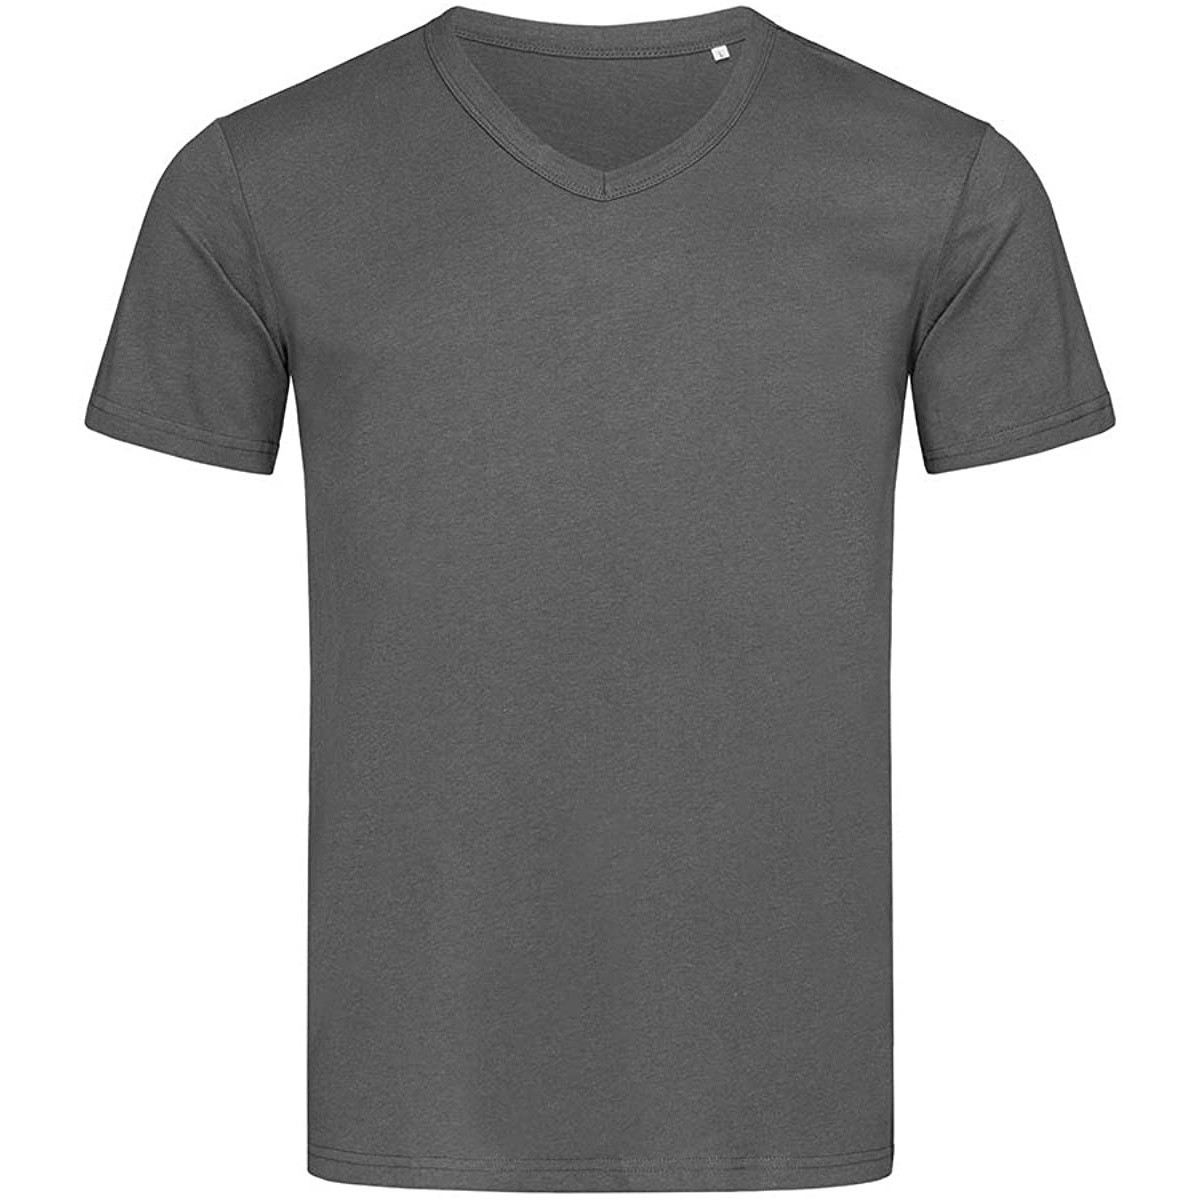 Vêtements Homme Long Sleeve-T-Shirt Striped AB356 Gris